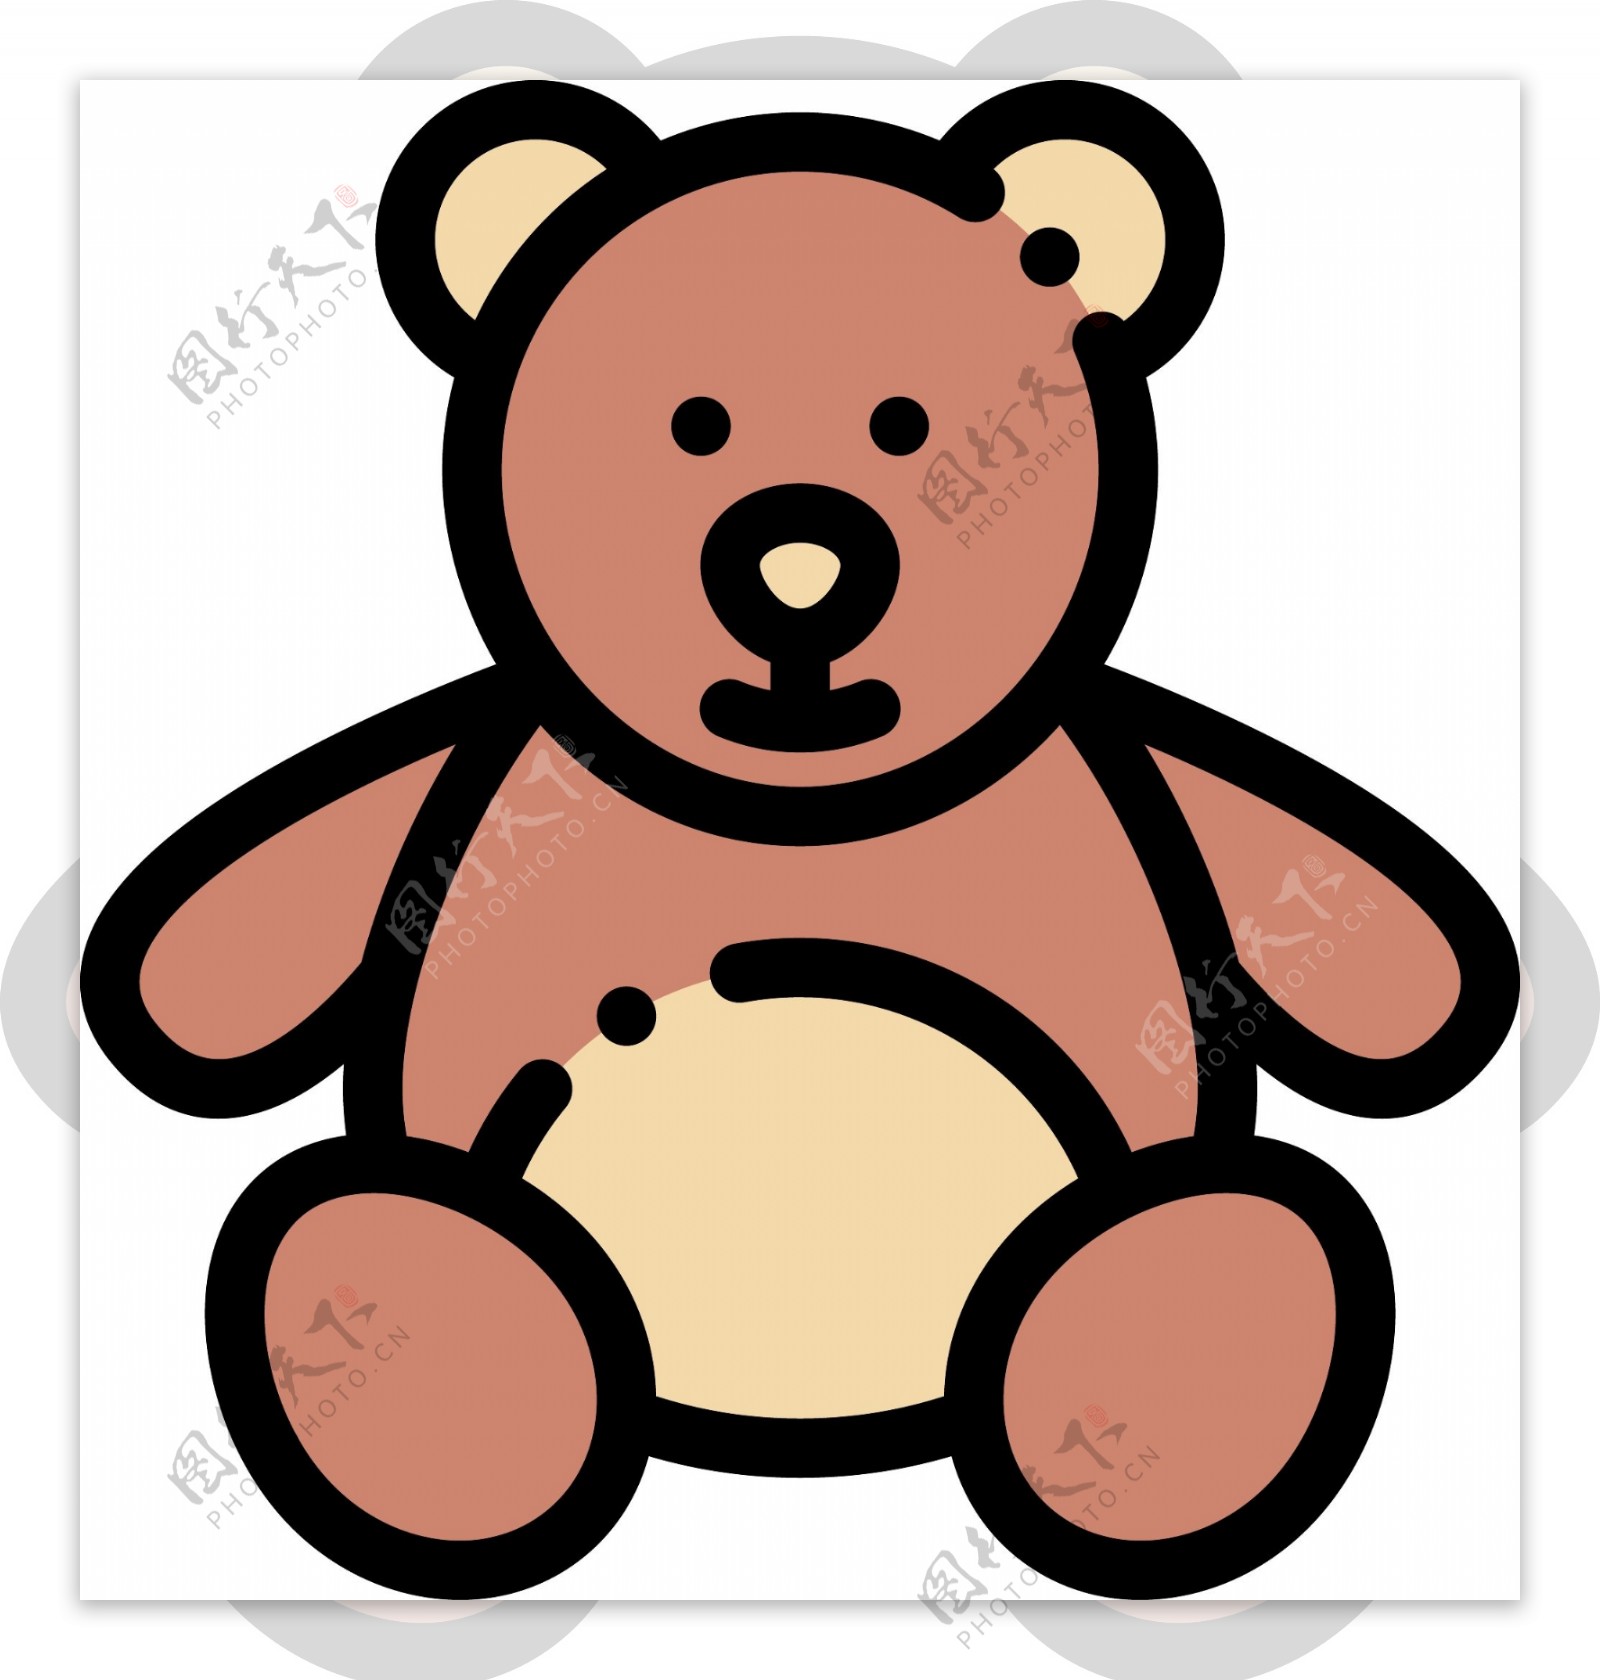 mbe风格玩具熊装饰图标